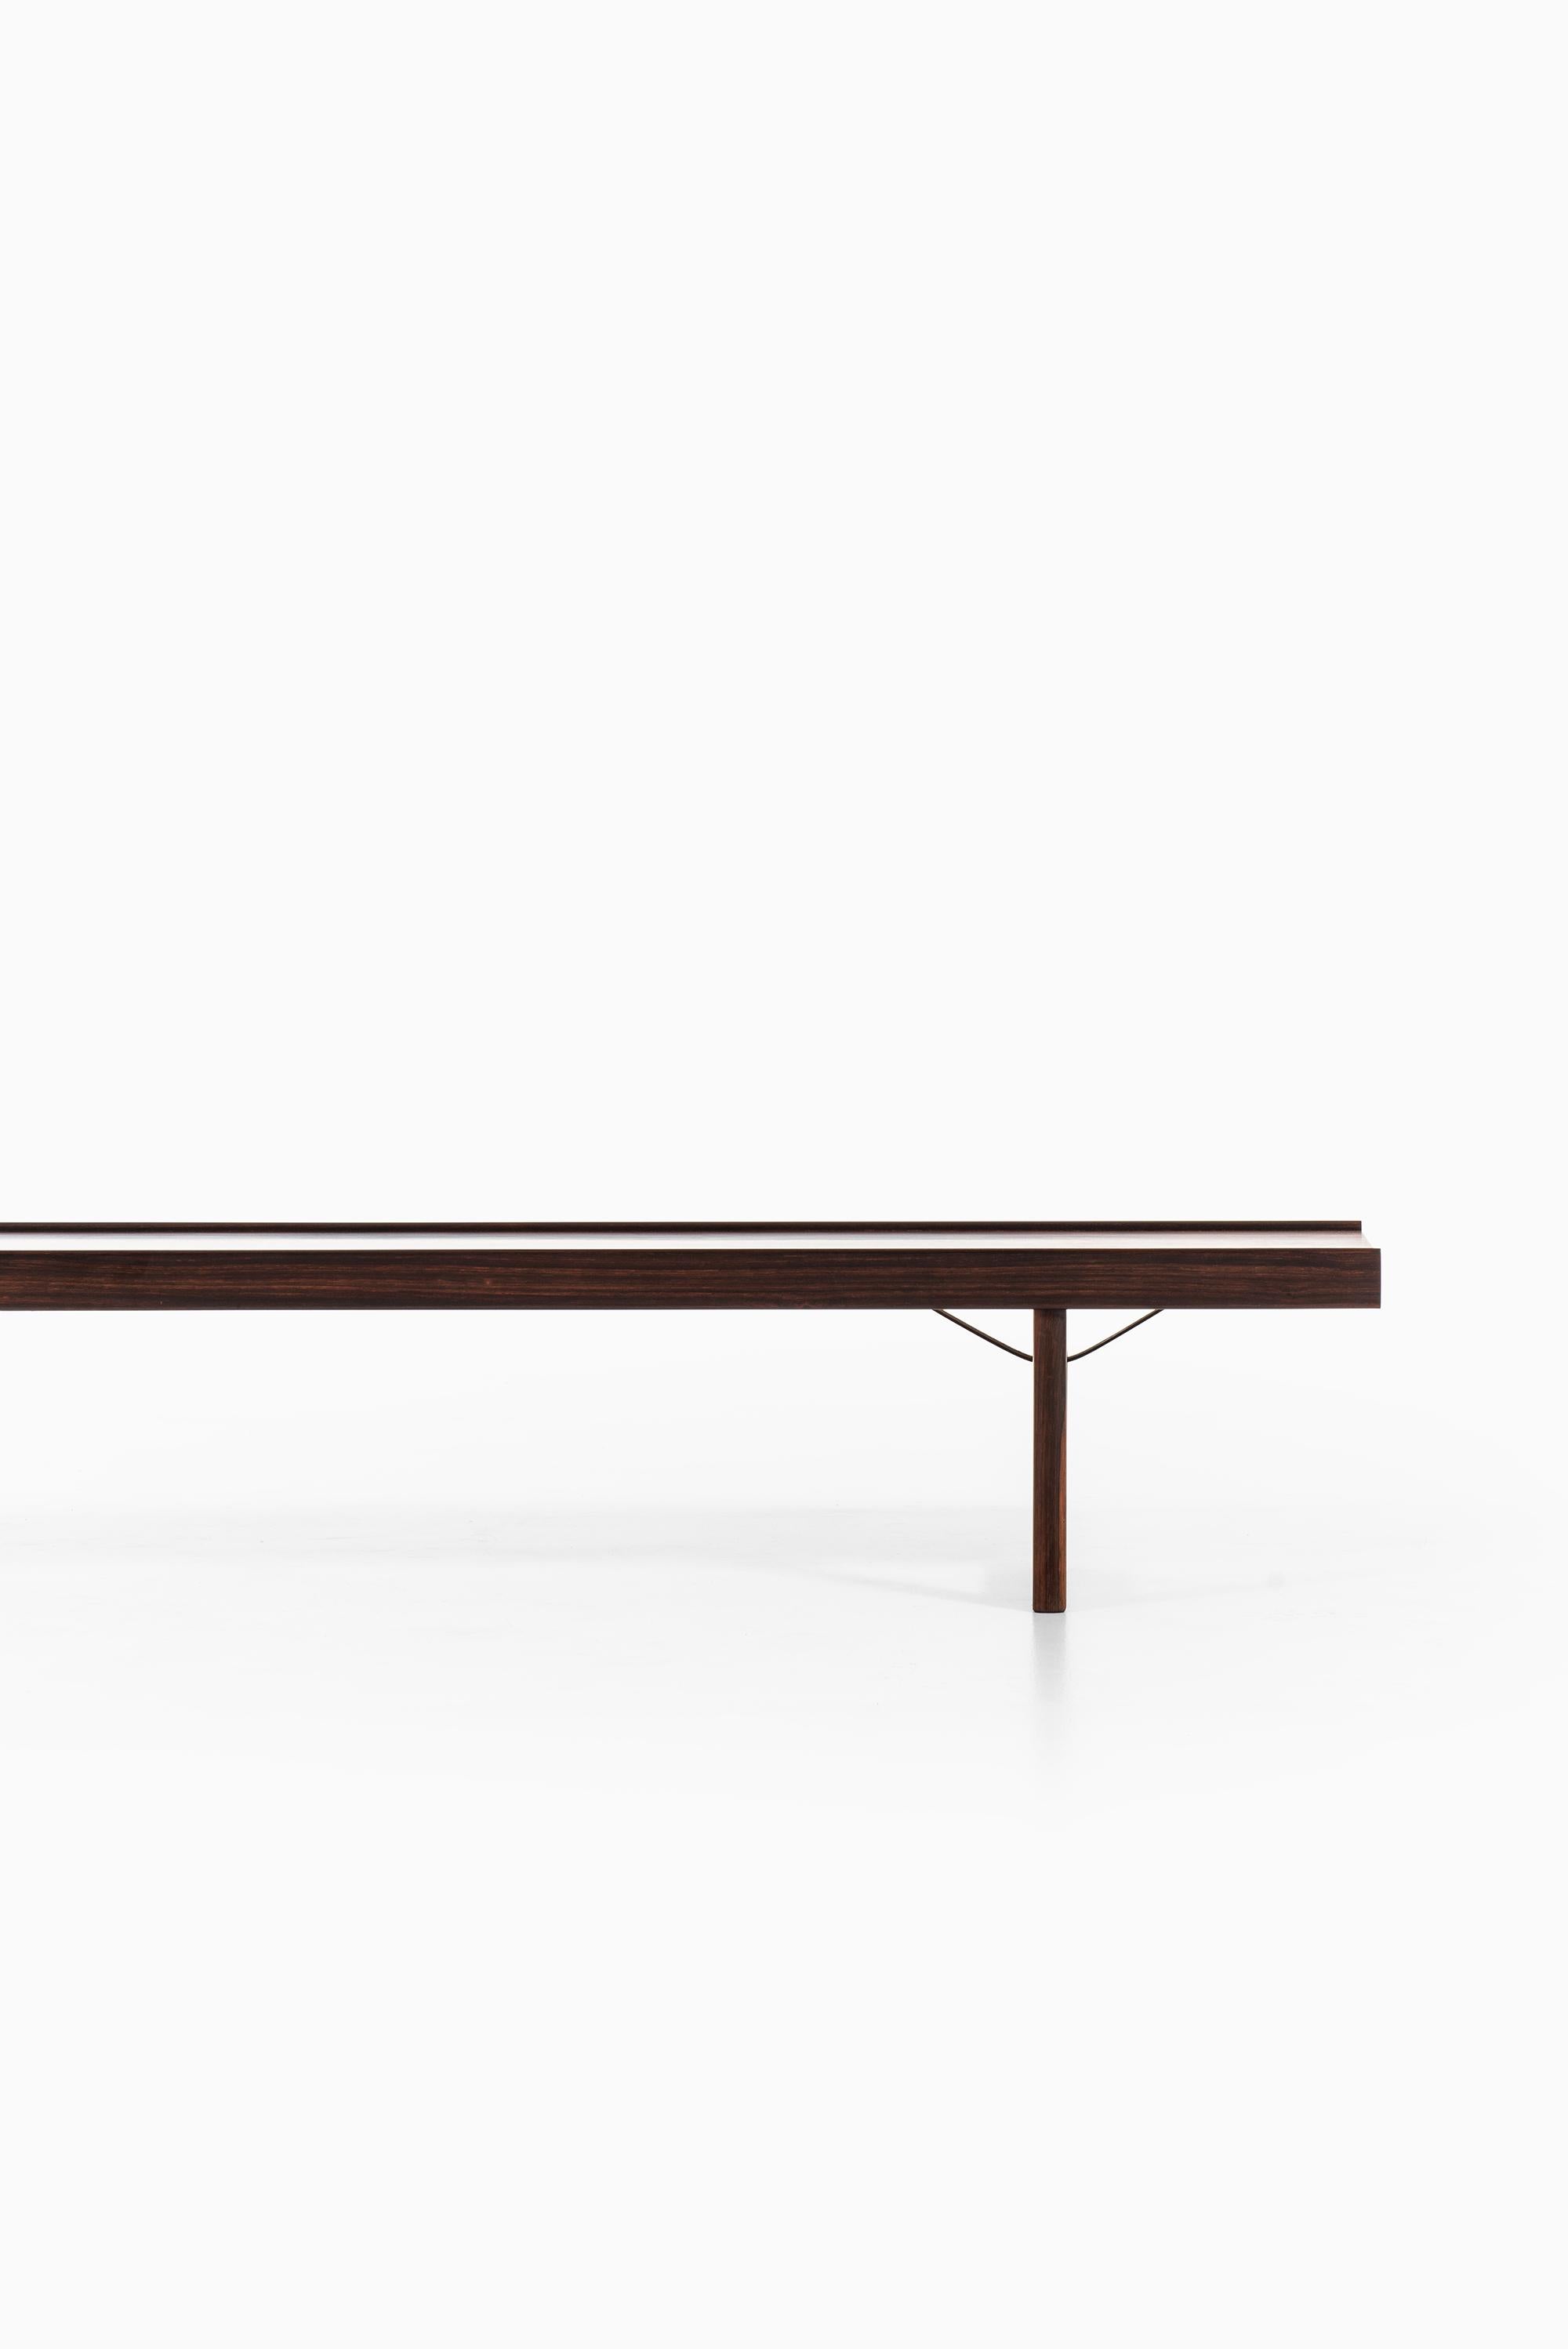 Bench / side table model Krobo designed by Torbjørn Afdal. Produced by Mellemstrands møbelfabrik in Norway.